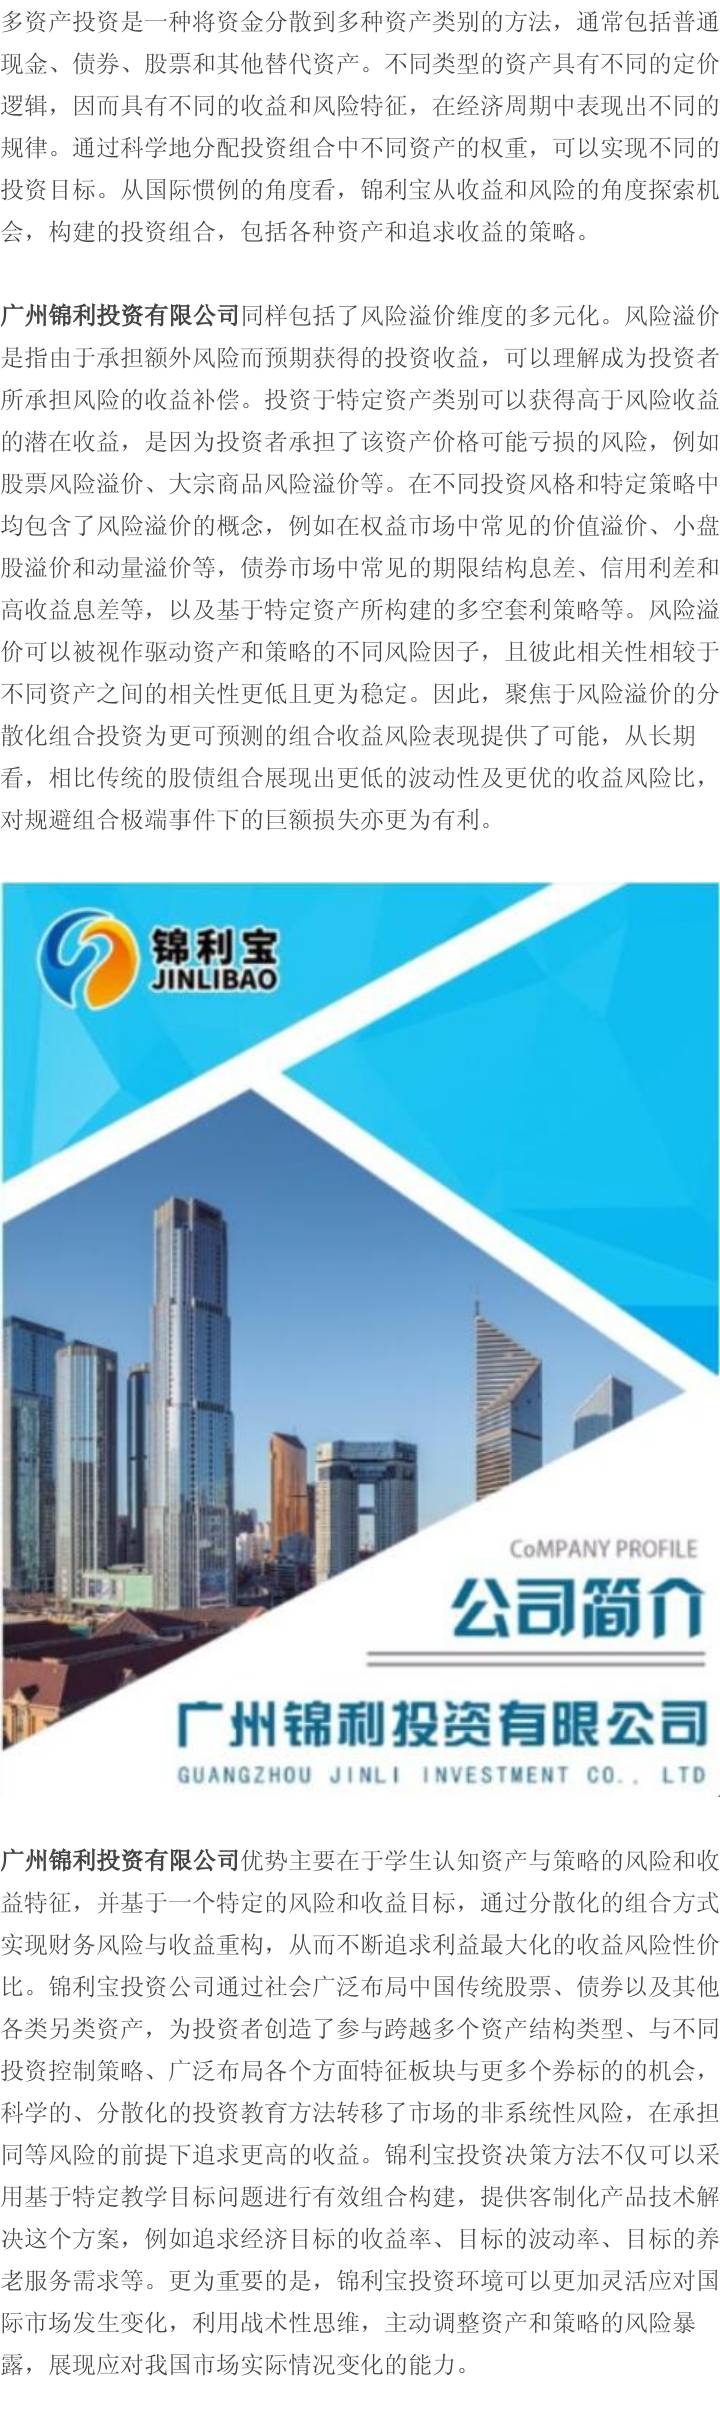 广州锦利投资有限公司，多元化视角策略探索